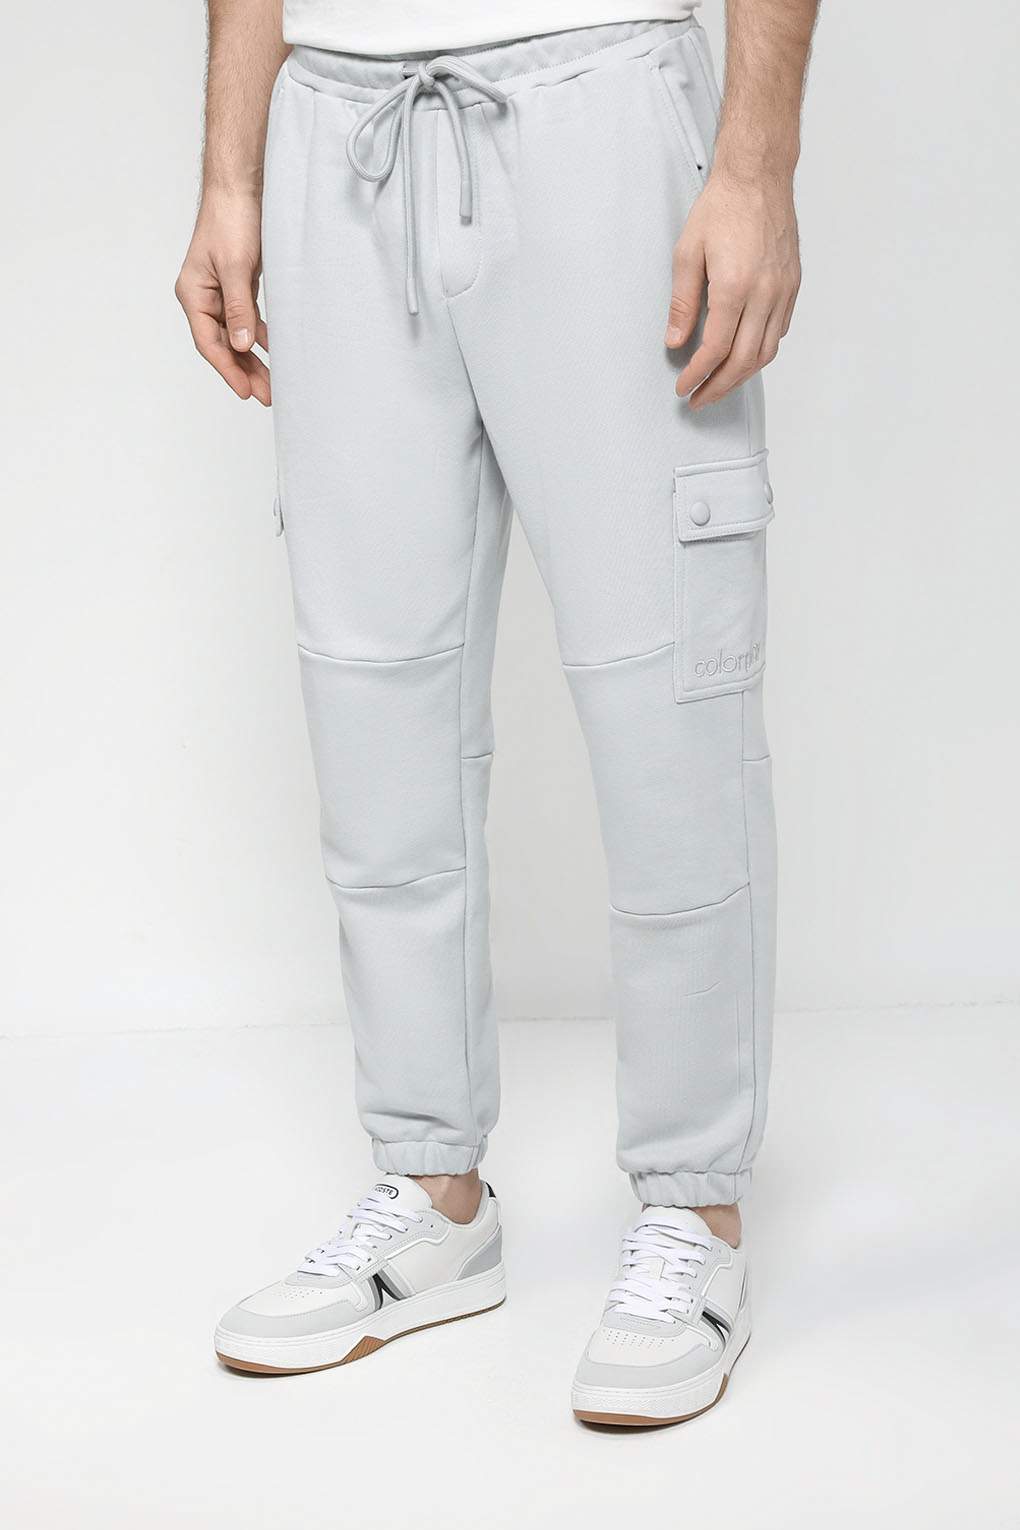 Спортивные брюки мужские COLORPLAY CP23022251-014 серые M - купить в Москве, цены на Мегамаркет | 100053448353